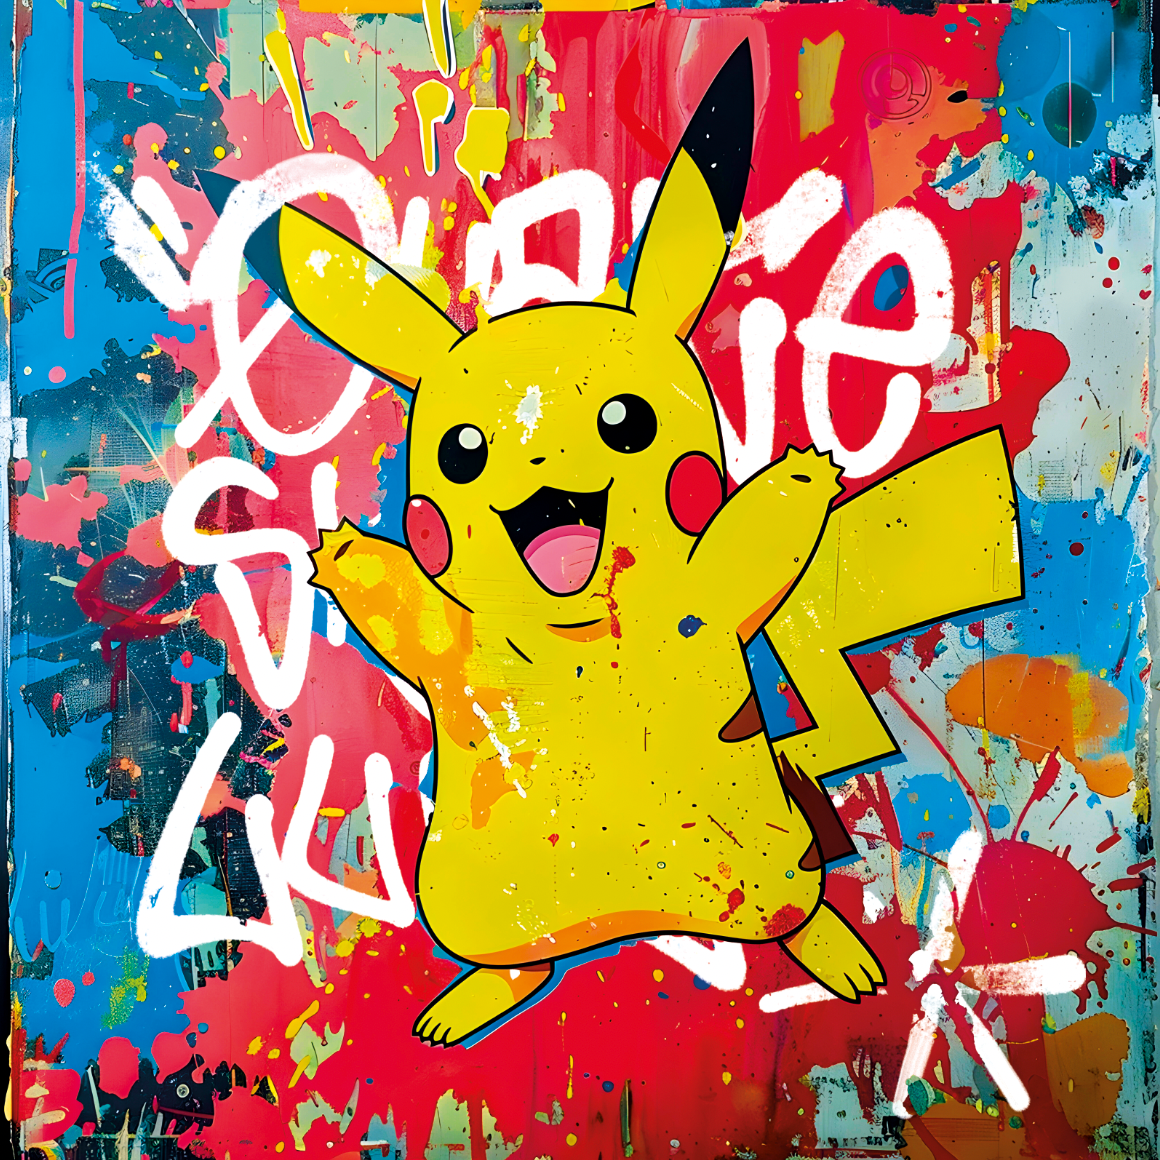 Tableau Pokémon Pikachu Dynamique - Cadre Déco Coloré pour Chambre d'Enfant - Fabulartz.fr 